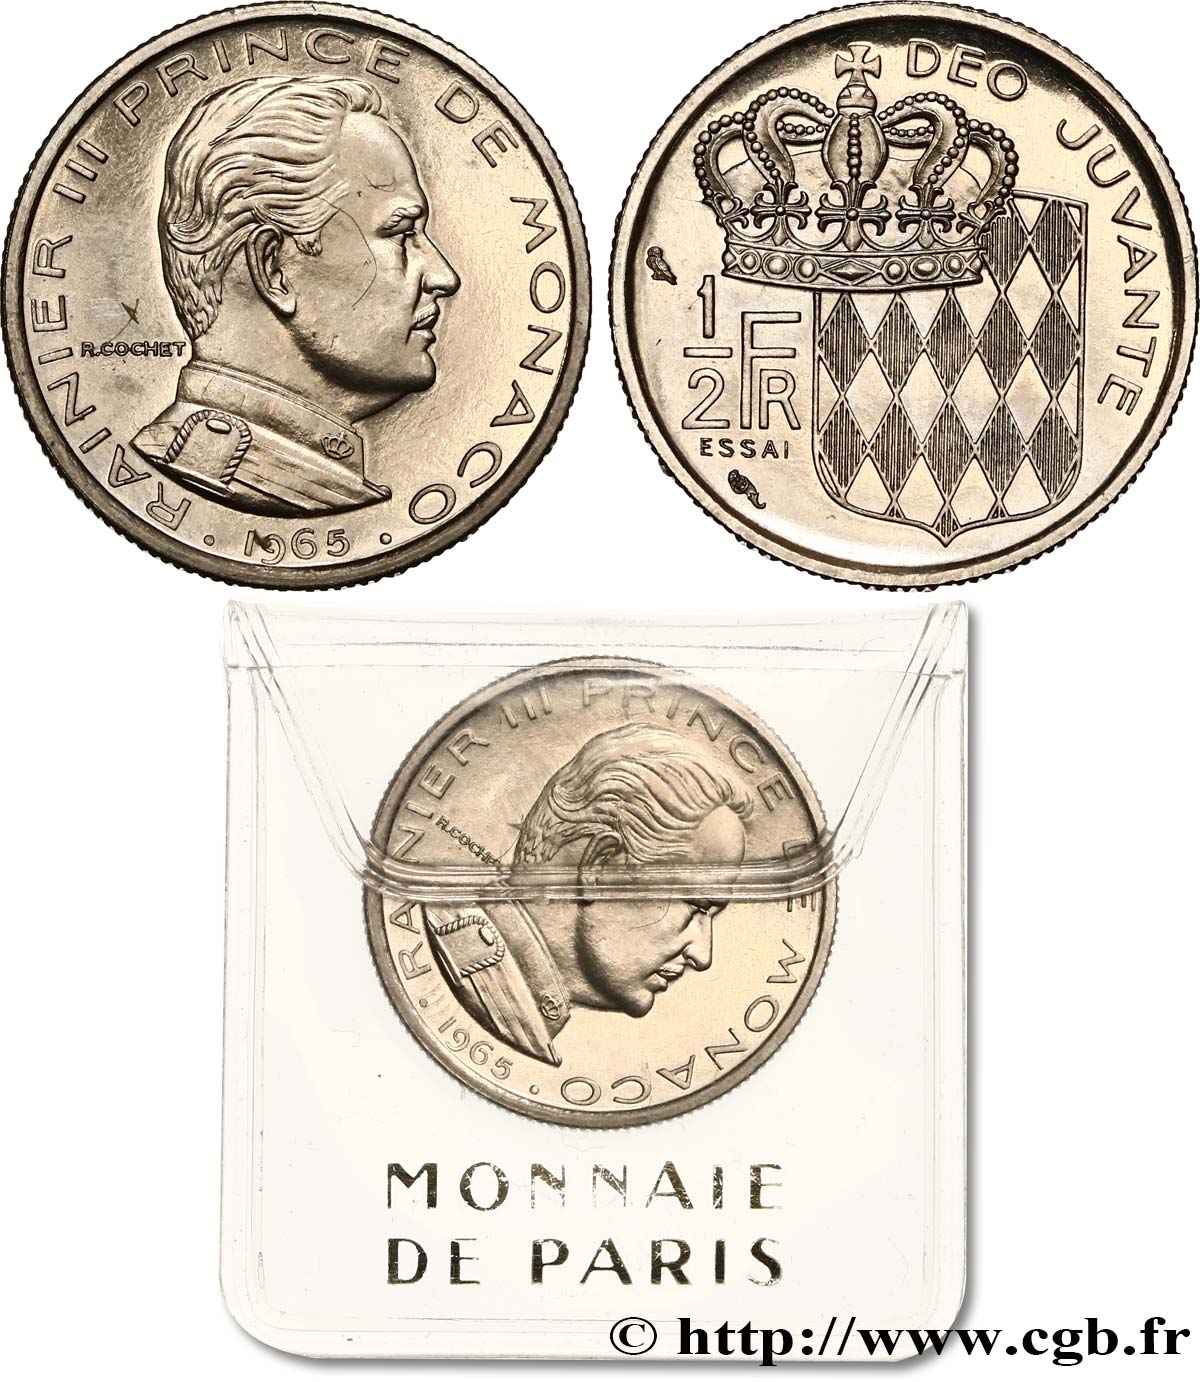 MONACO - PRINCIPATO DI MONACO - RANIERI III Essai de 1/2 Franc 1965 Paris MS 